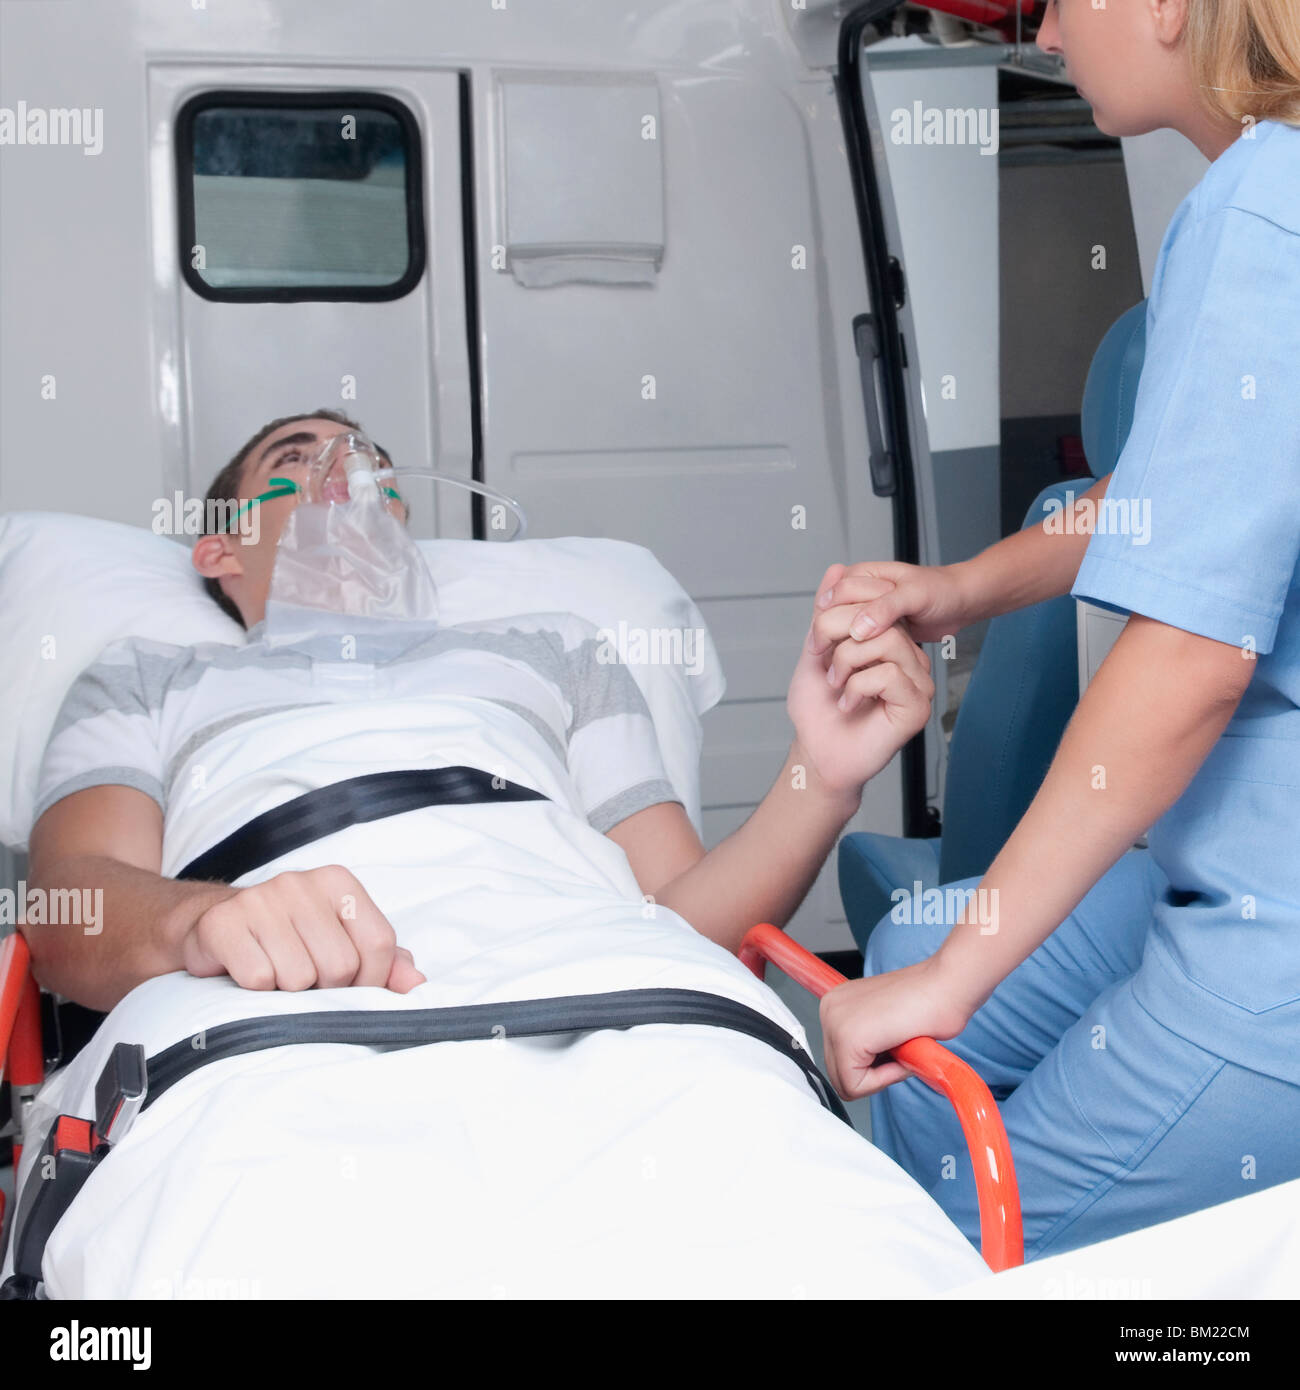 Infermiera femmina ad assistere un paziente in una ambulanza Foto Stock